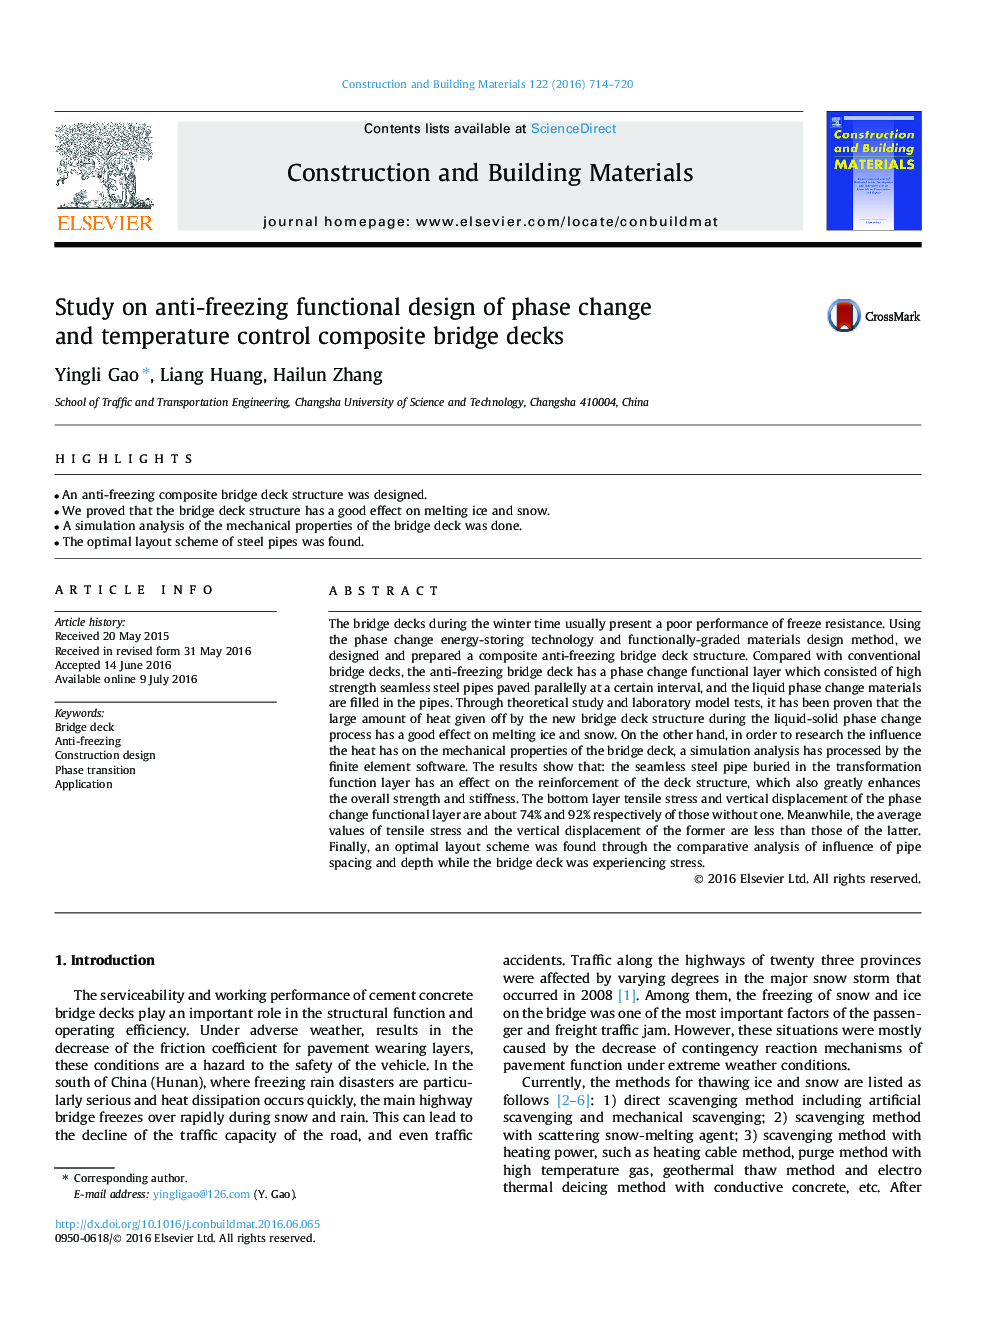 مطالعه طراحی های کاربردی ضد انجماد تغییر فاز و کنترل دمای کنترل کامپوزیت بلوک ها 